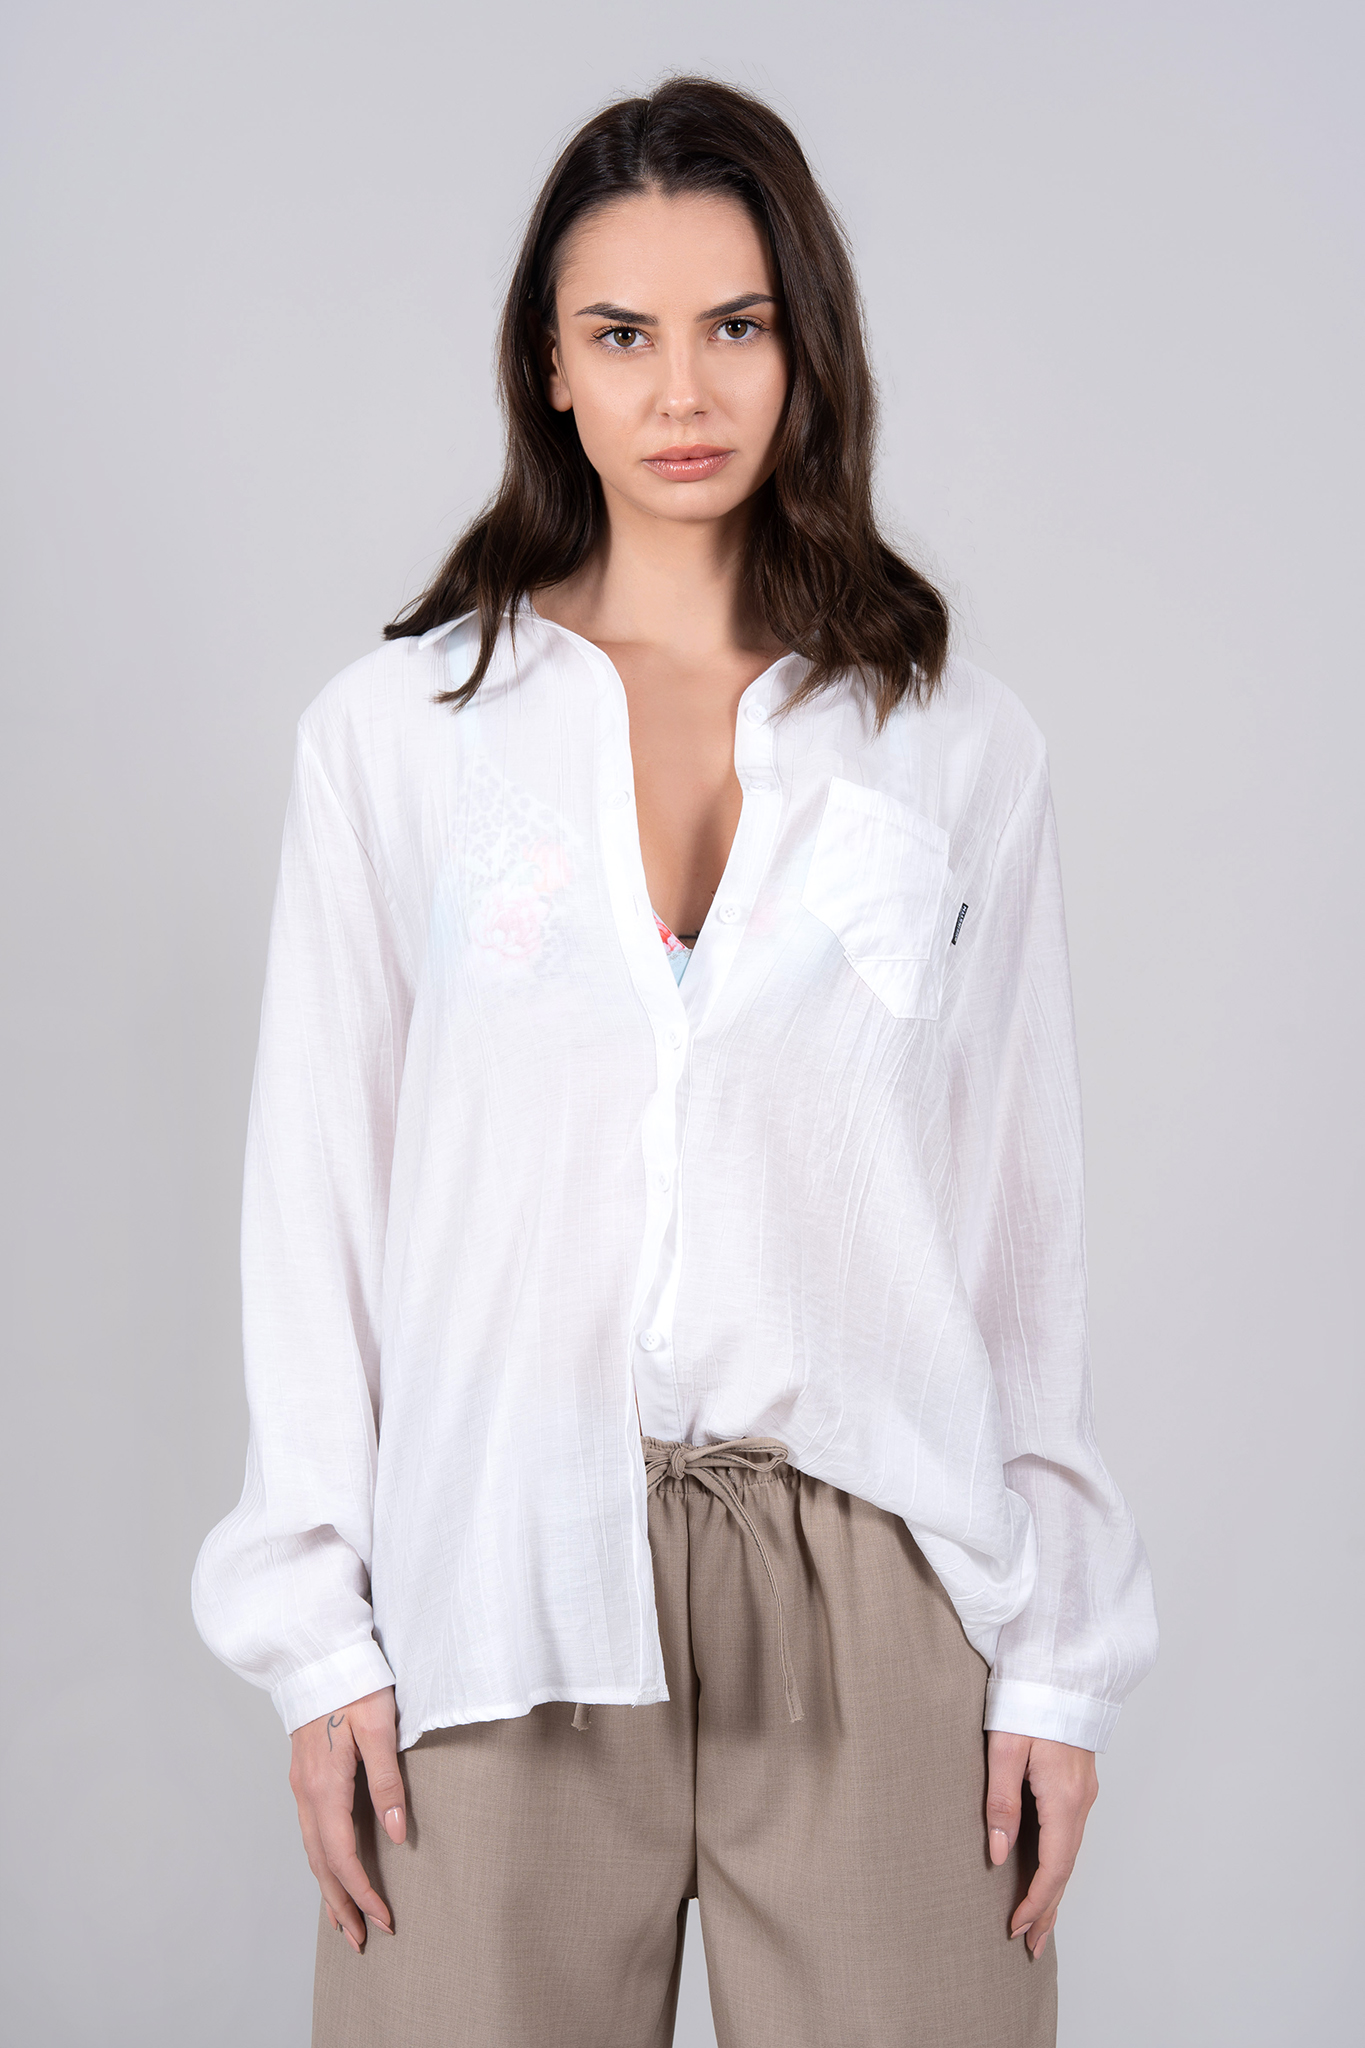 Дамска широка риза в бяло с двоен джоб